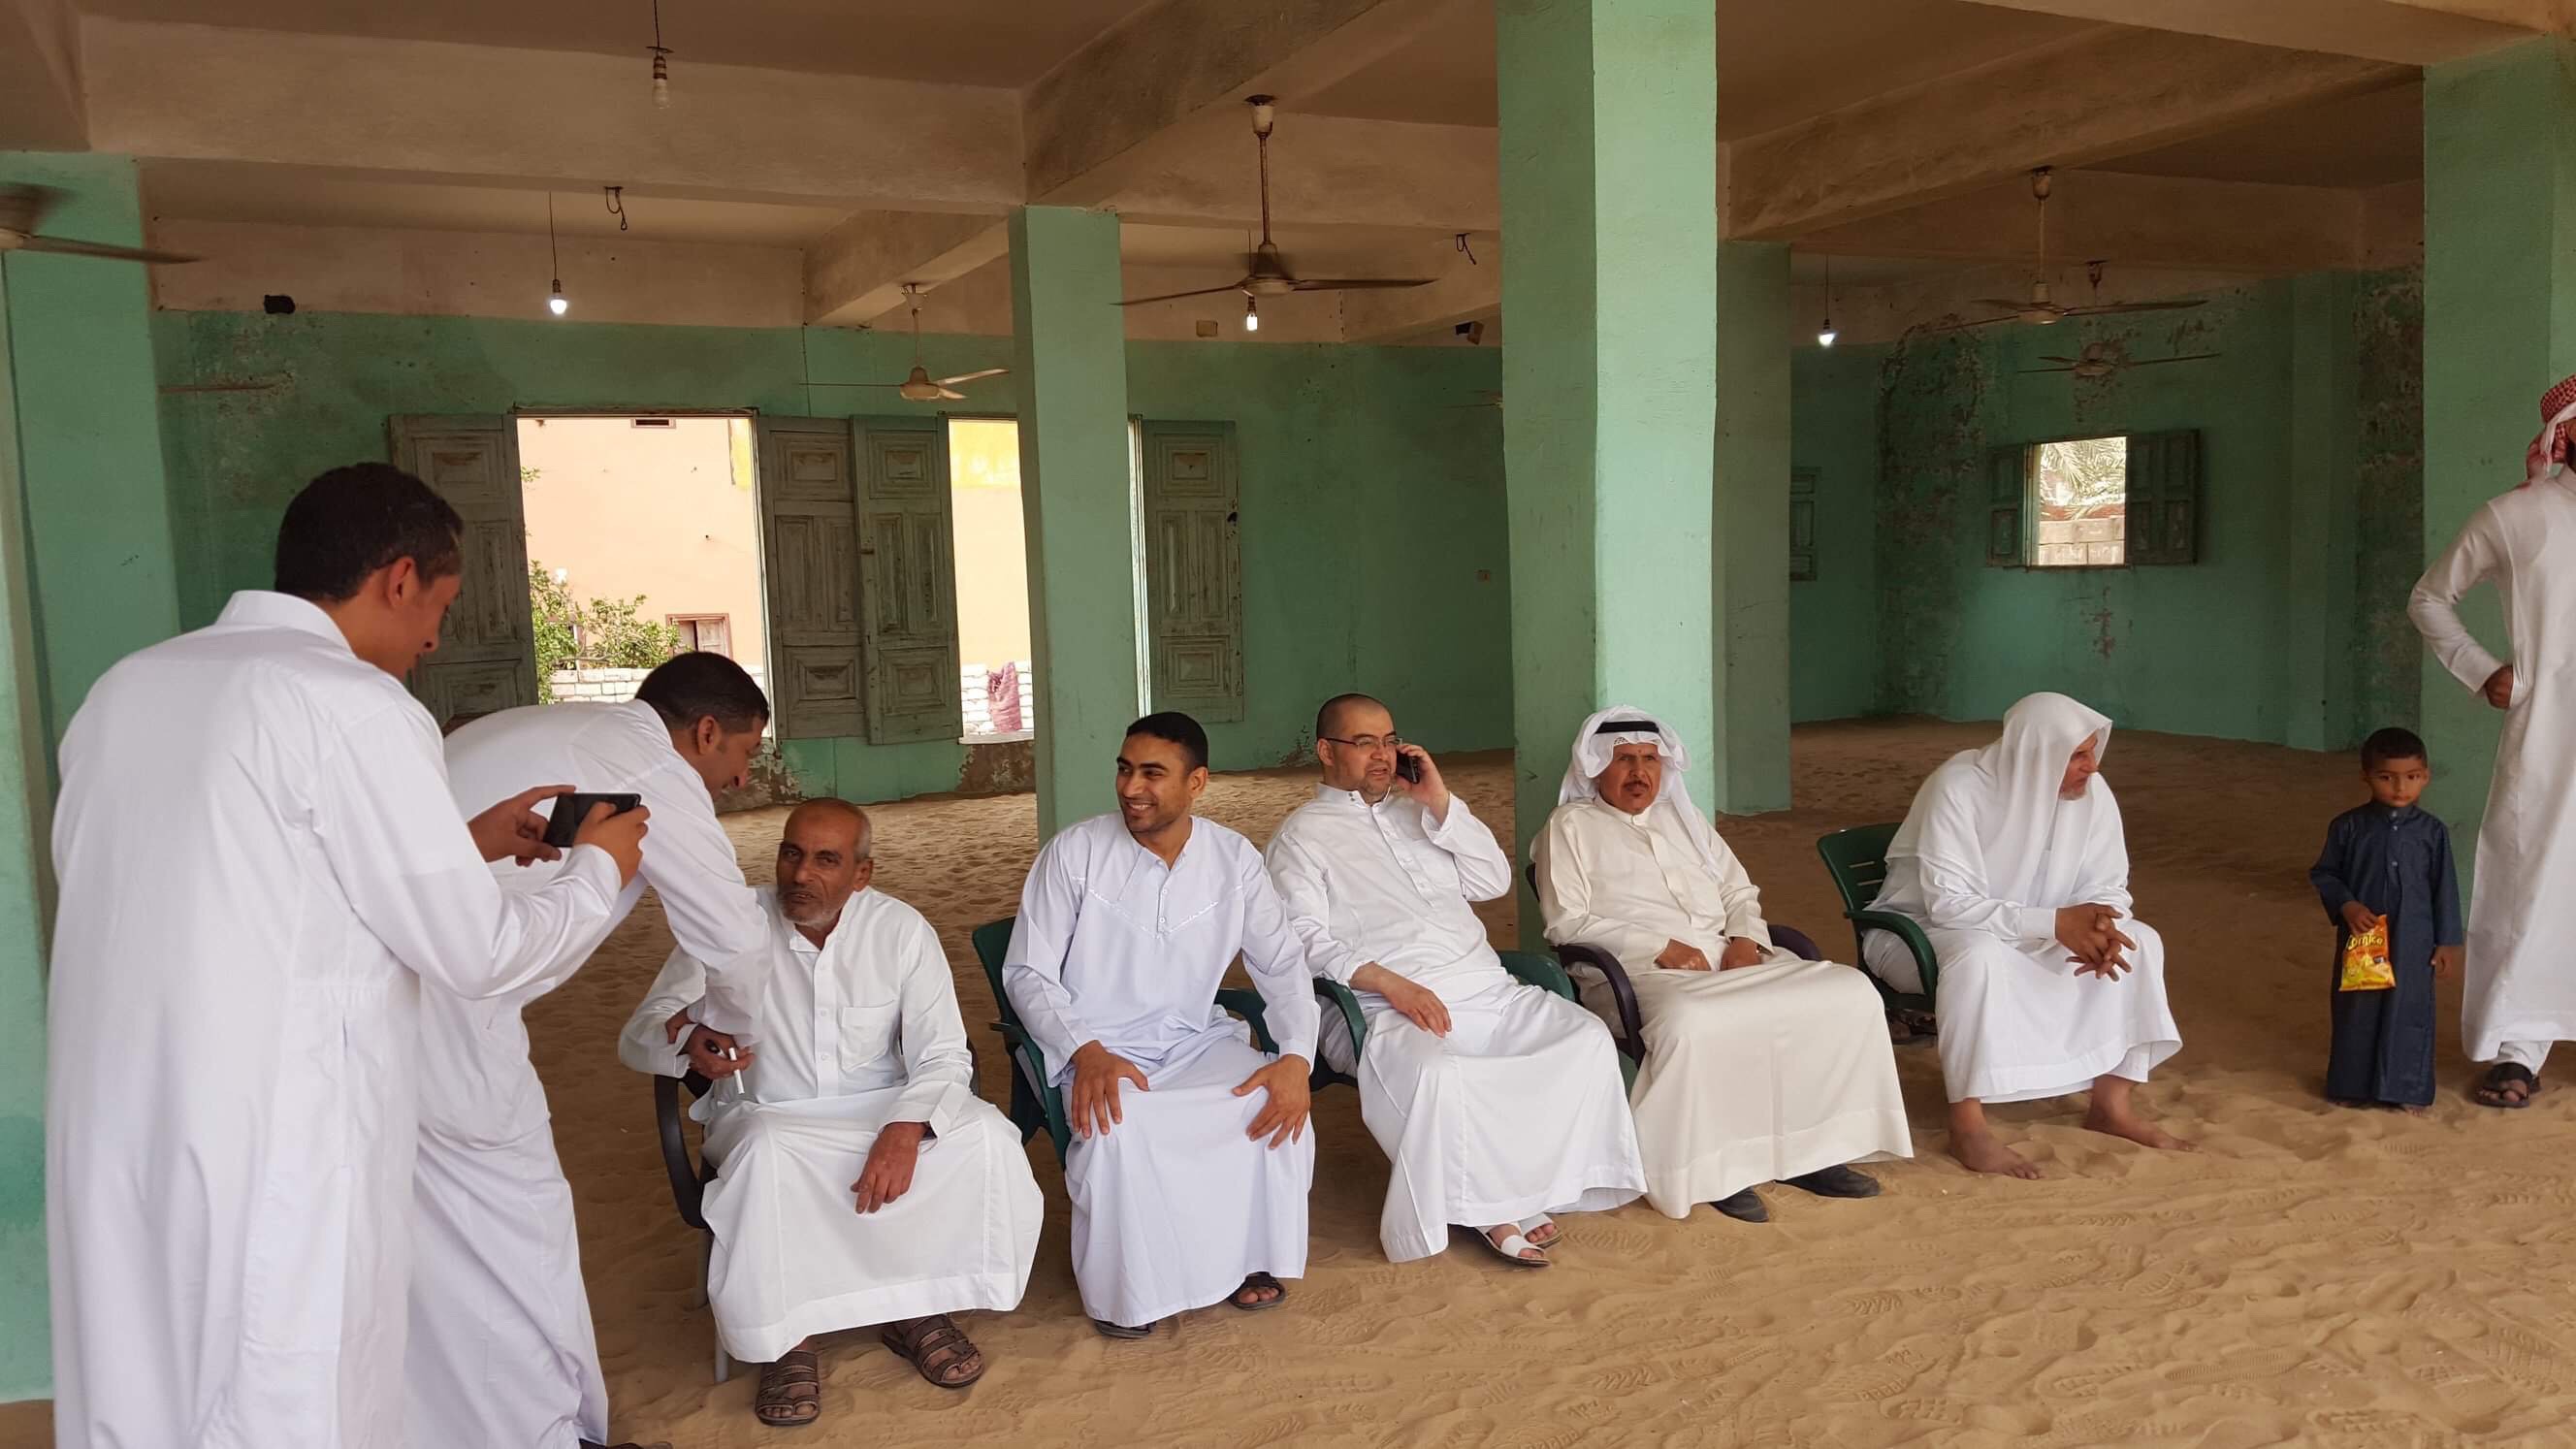 دواوين قبائل سيناء ملتقى يجمع الأقارب والأصدقاء فى احتفالات عيد الفطر (7)